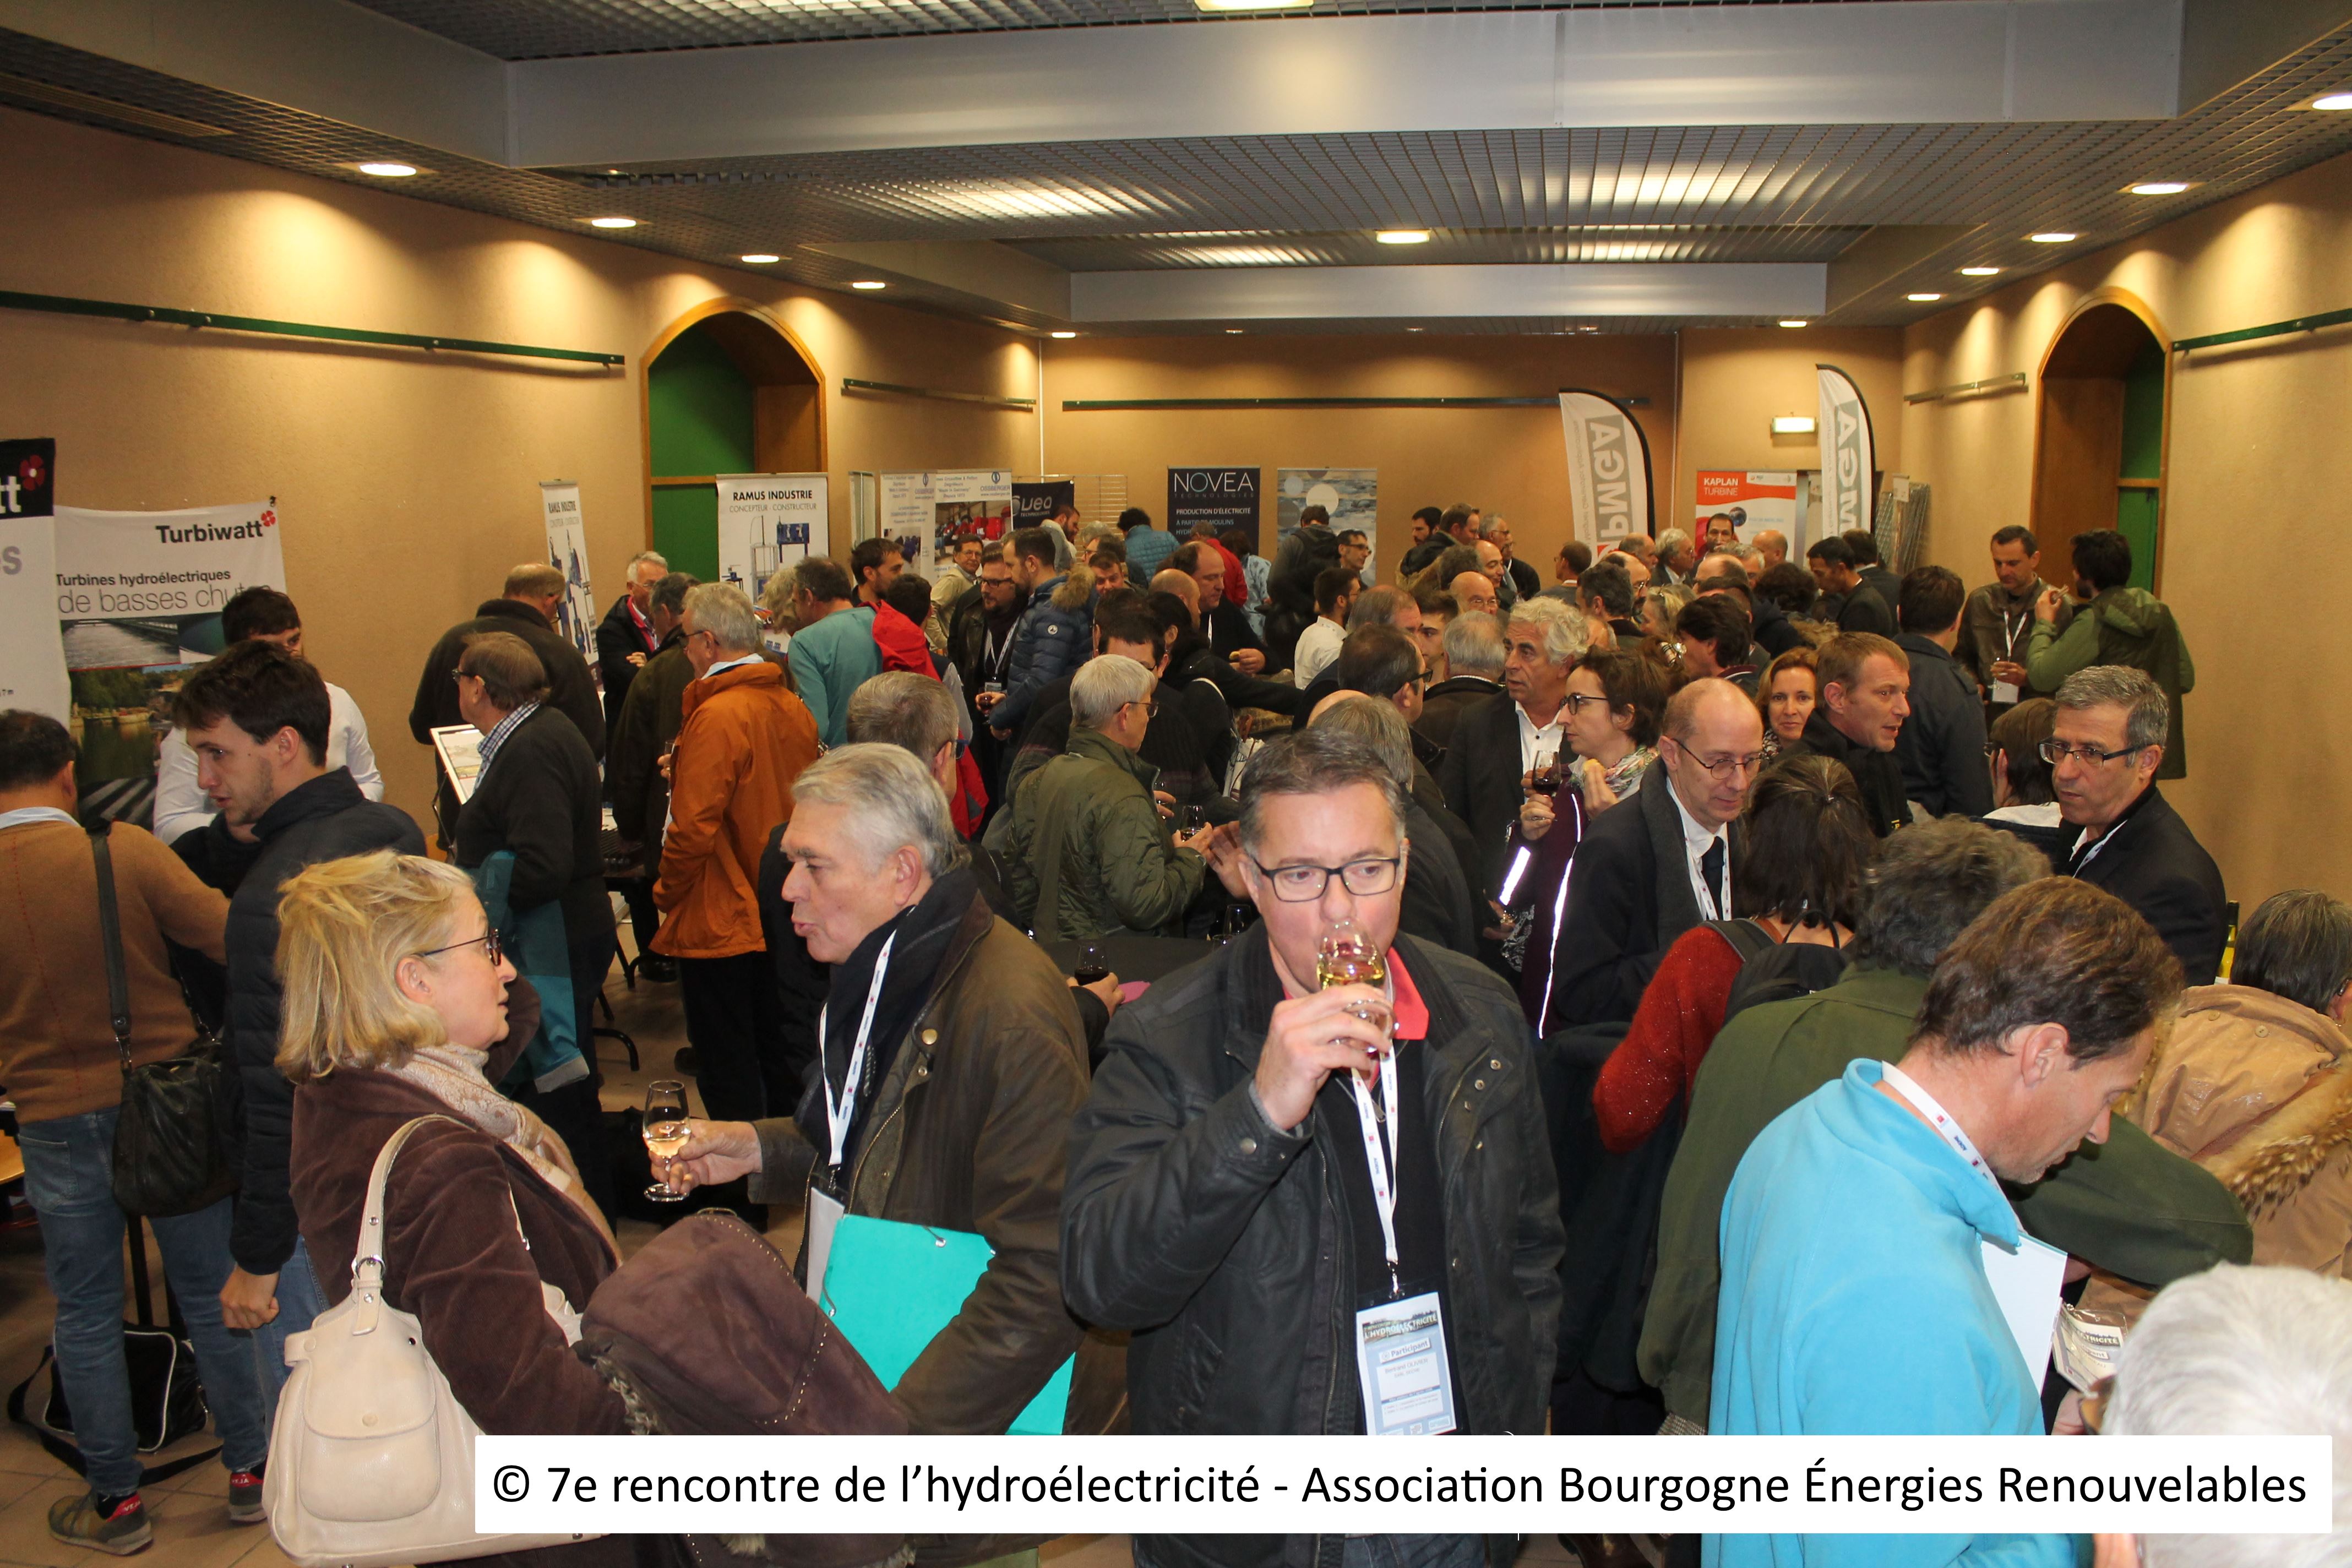 11 - © 7e rencontre de l’hydroélectricité - Association Bourgogne Énergies Renouvelables